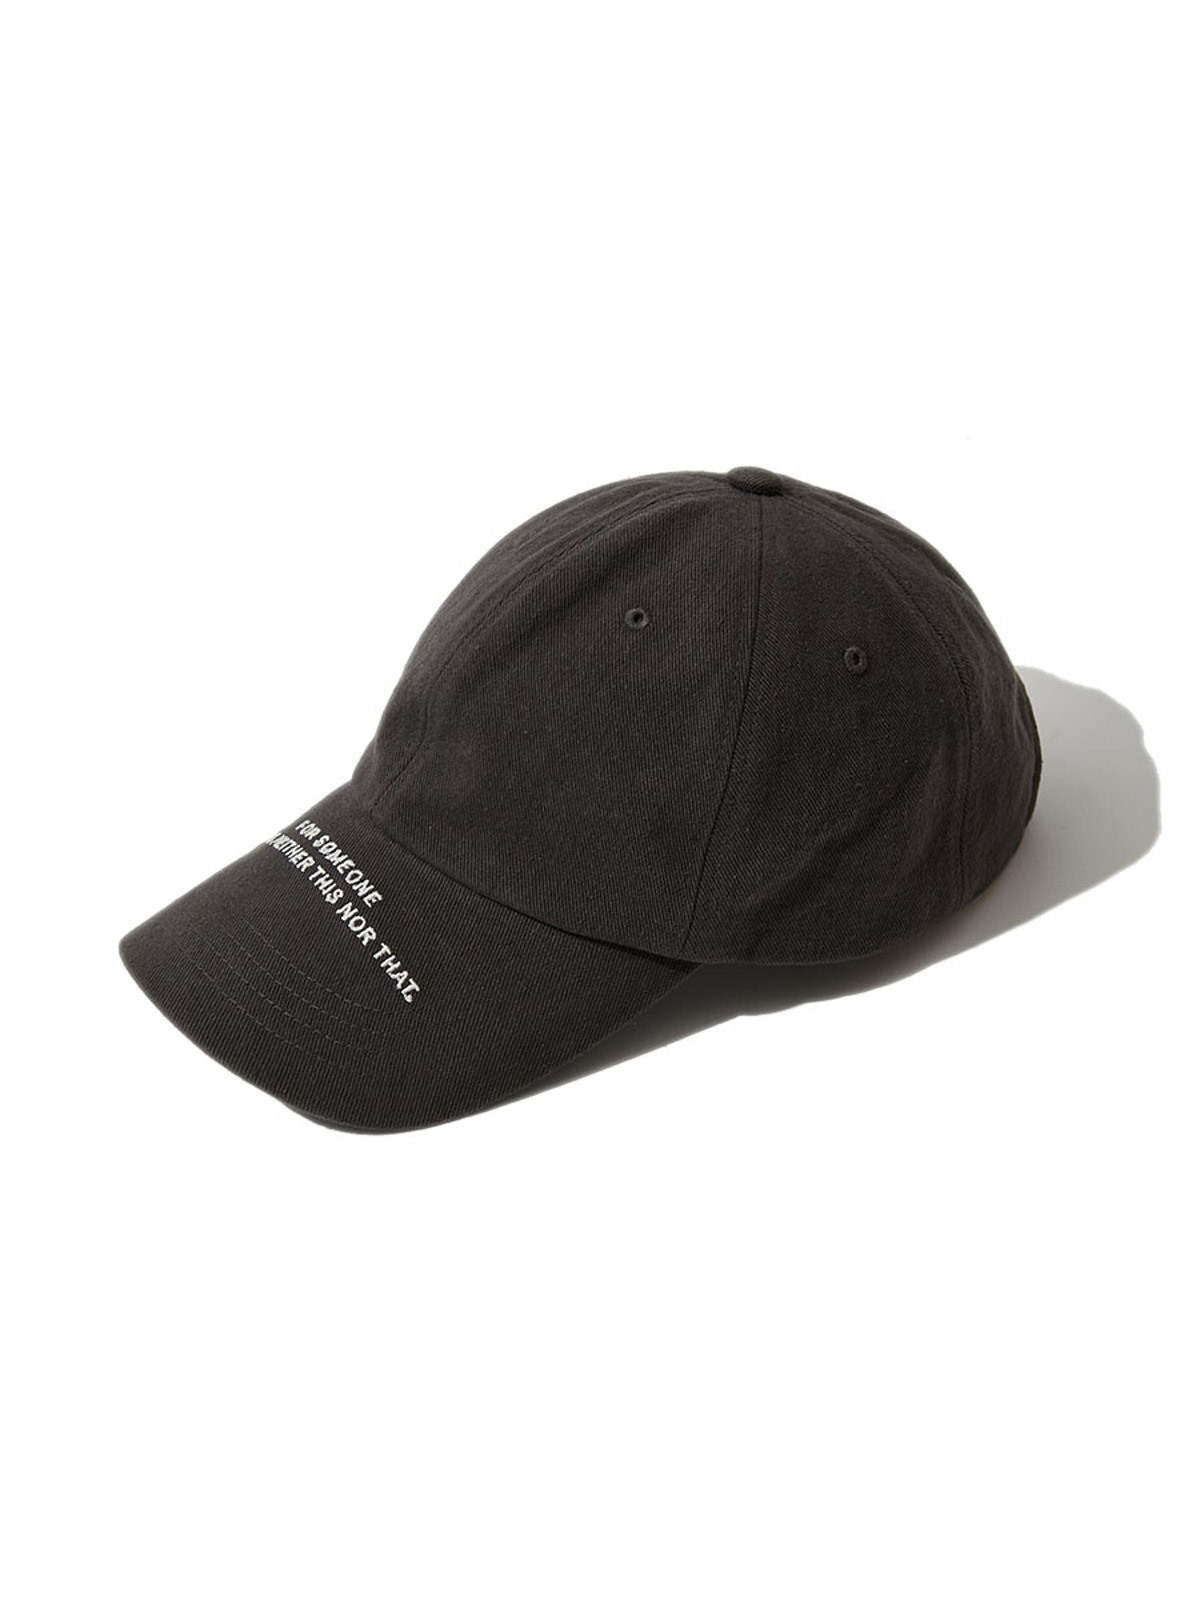 SLOGAN BALL CAP (CHARCOAL GREY)